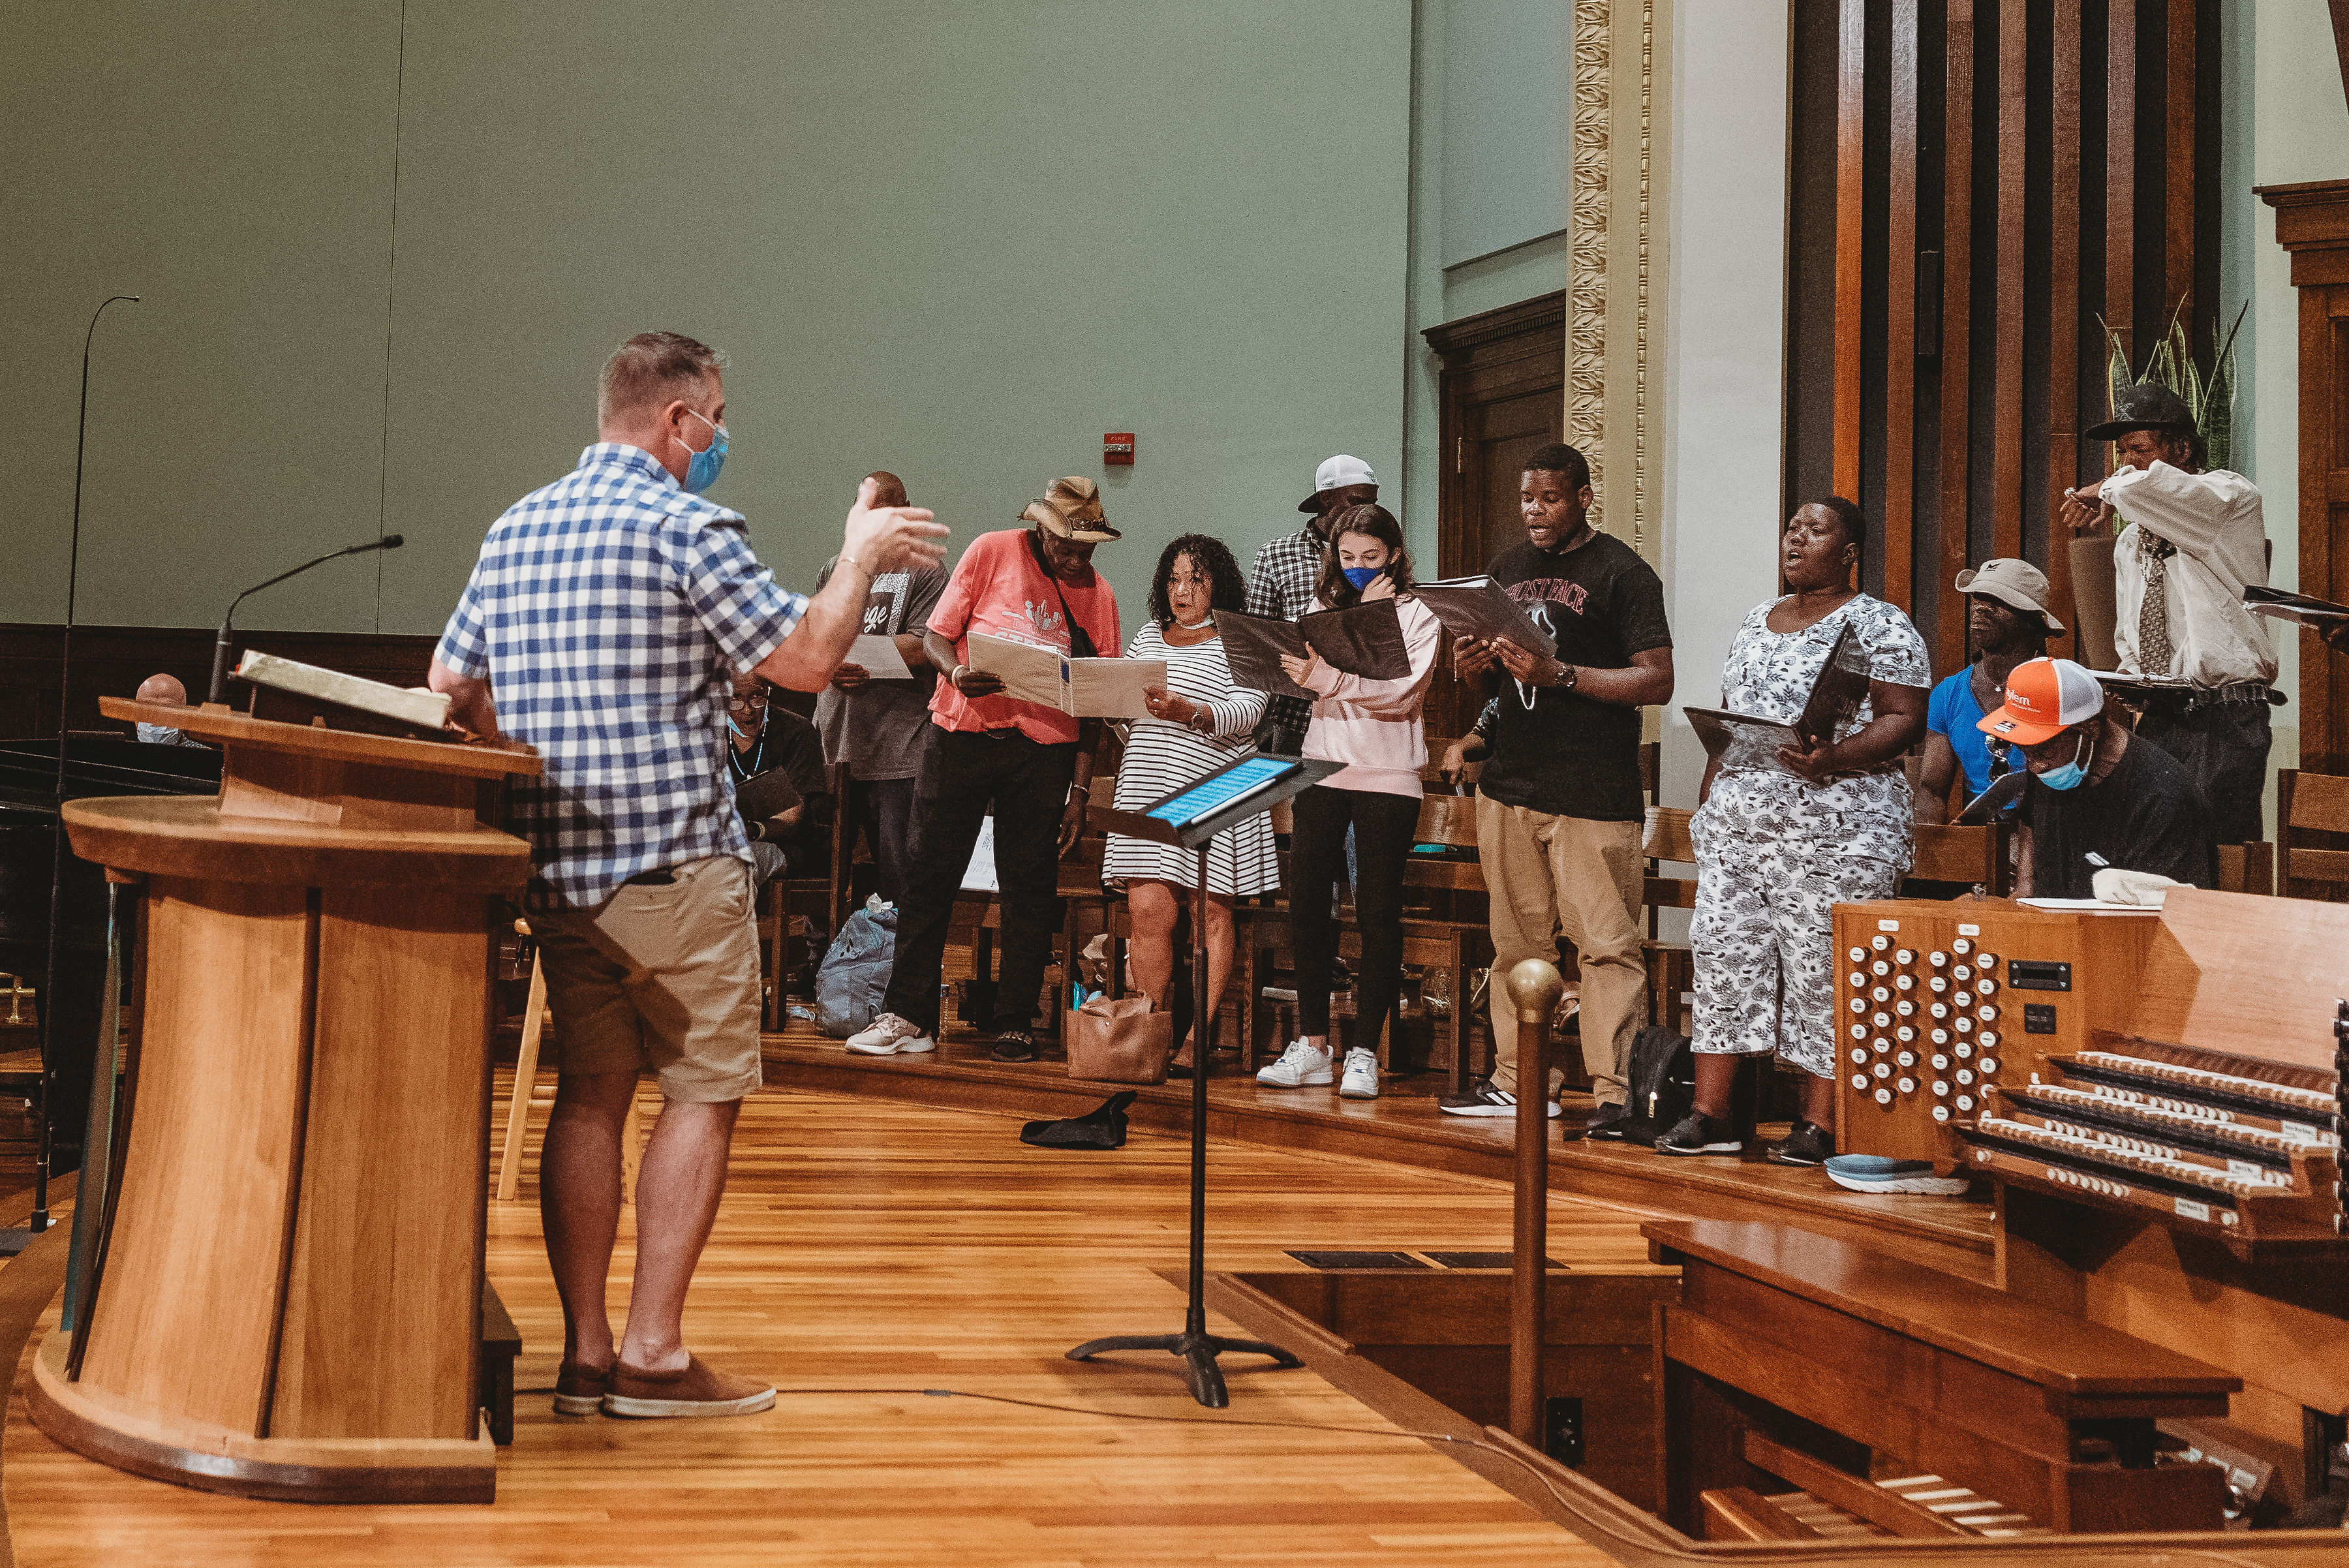 Dallas Street Choir rehearsal at First Presbyterian Church of Dallas